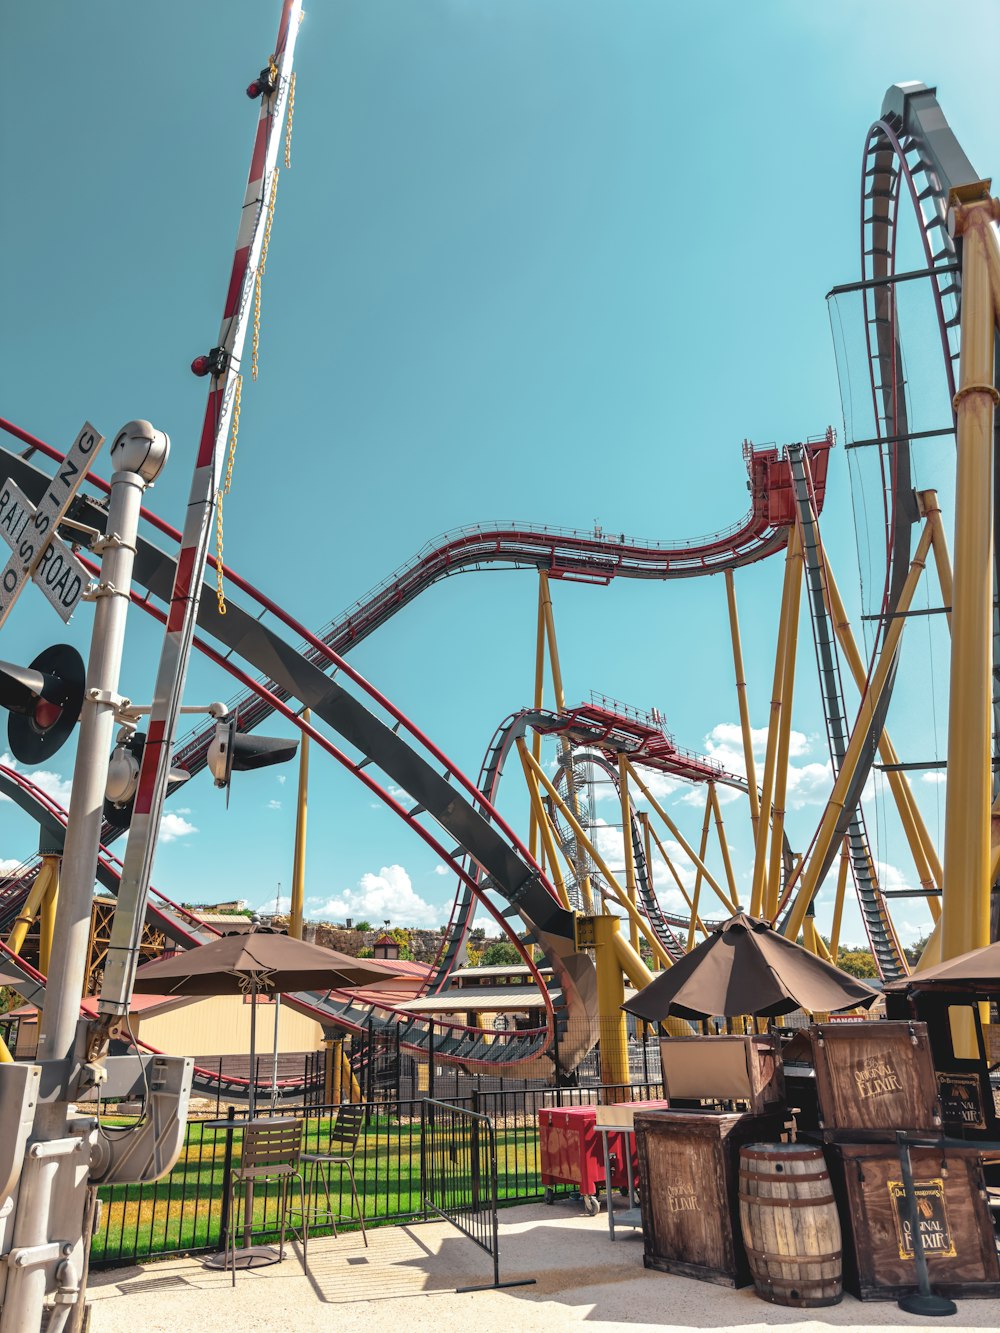 a roller coaster at an amusement park